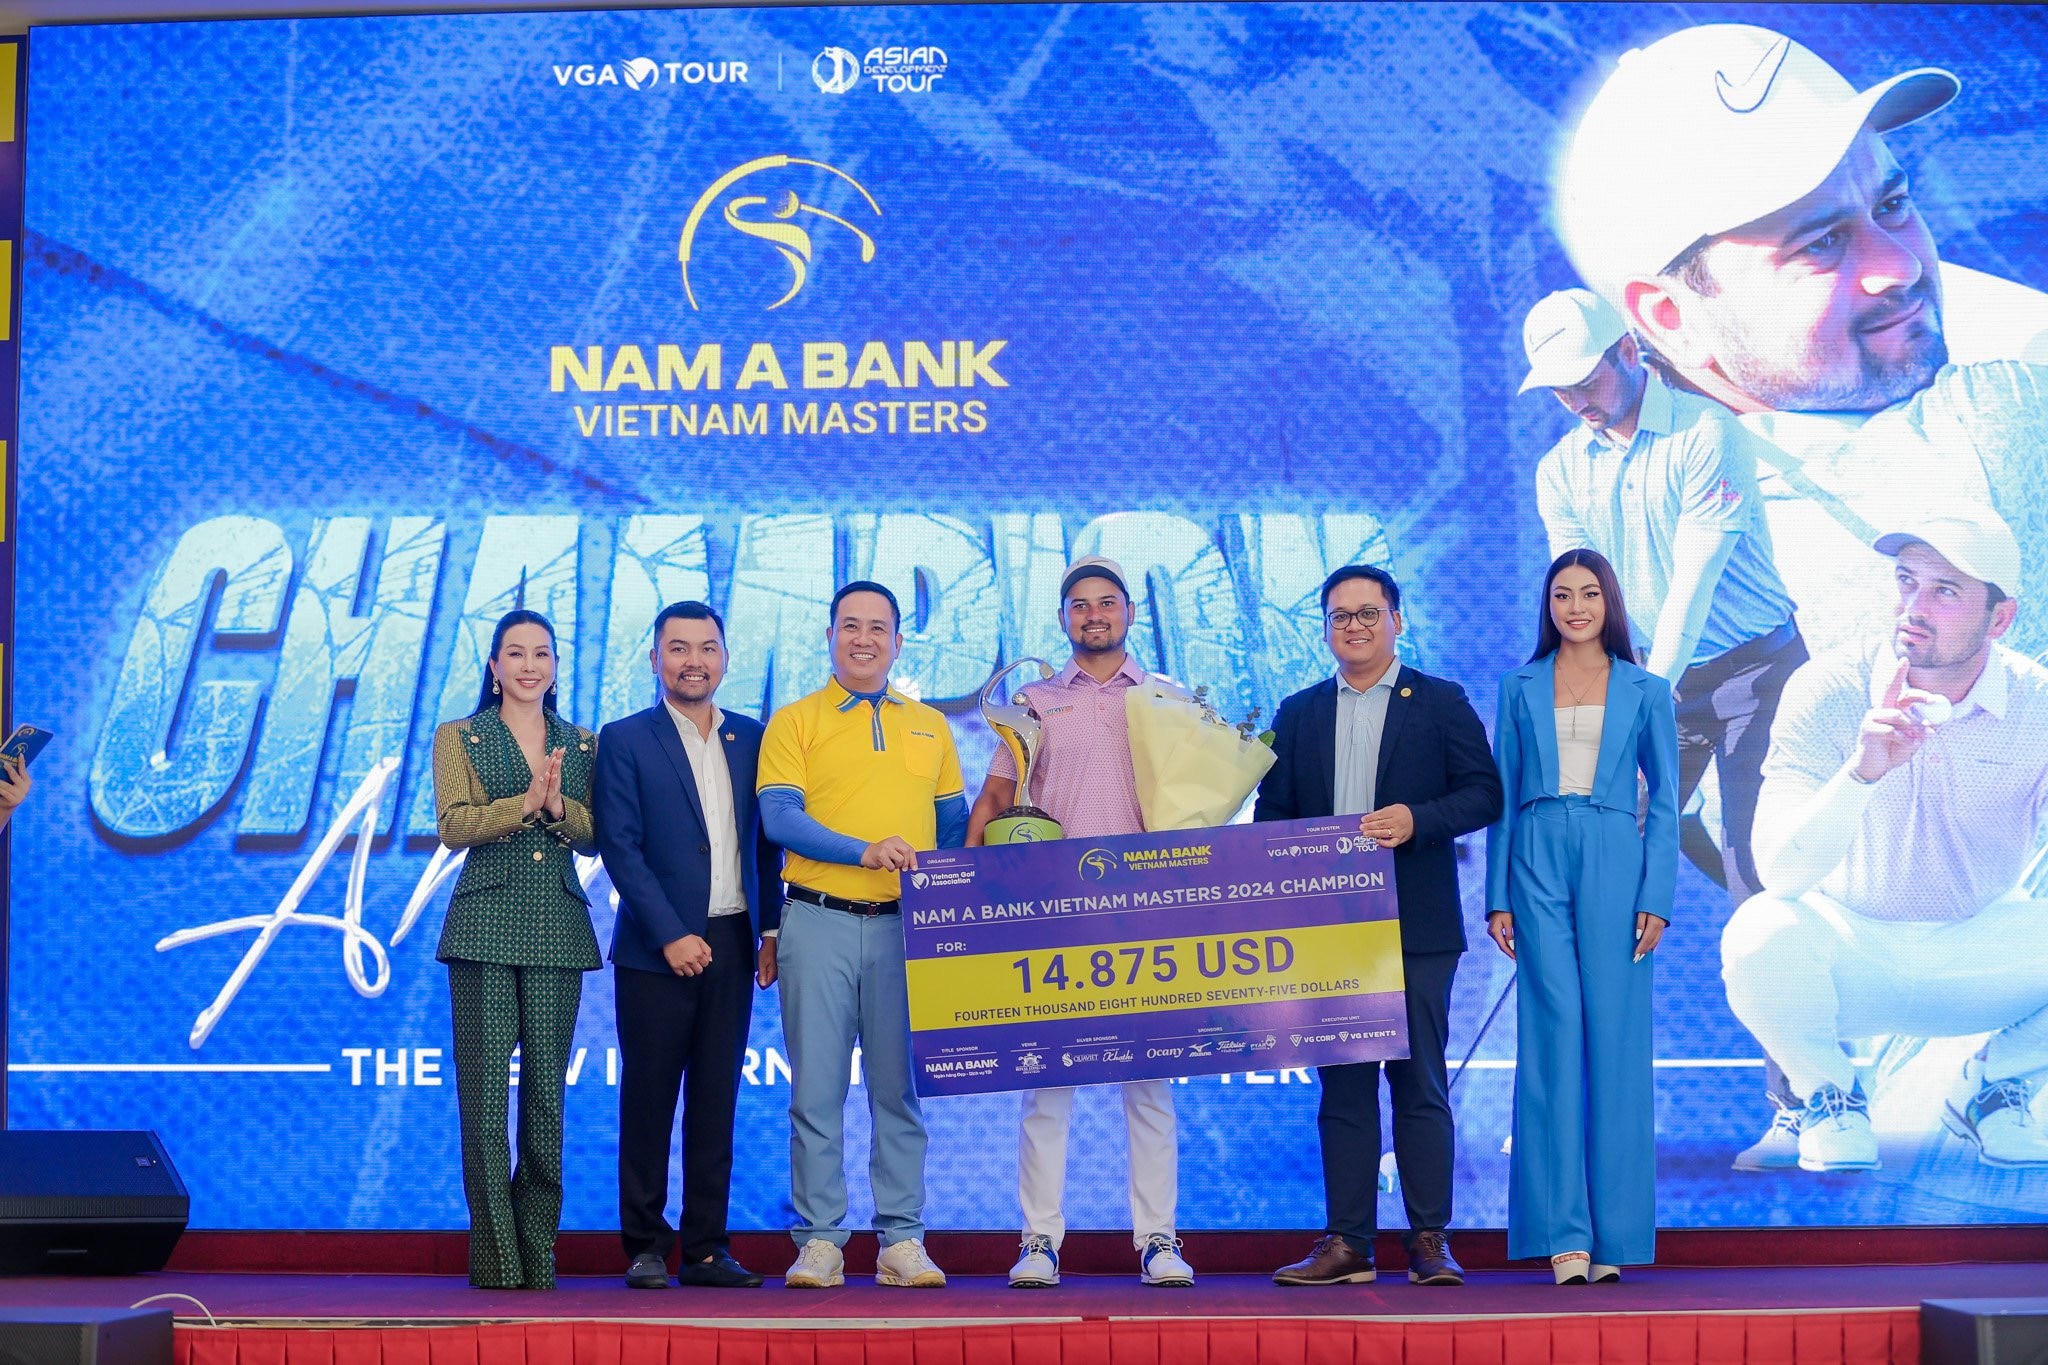 Kỷ lục của Nguyễn Anh Minh bị phá vỡ tại giải golf Nam A Bank Vietnam Masters- Ảnh 2.